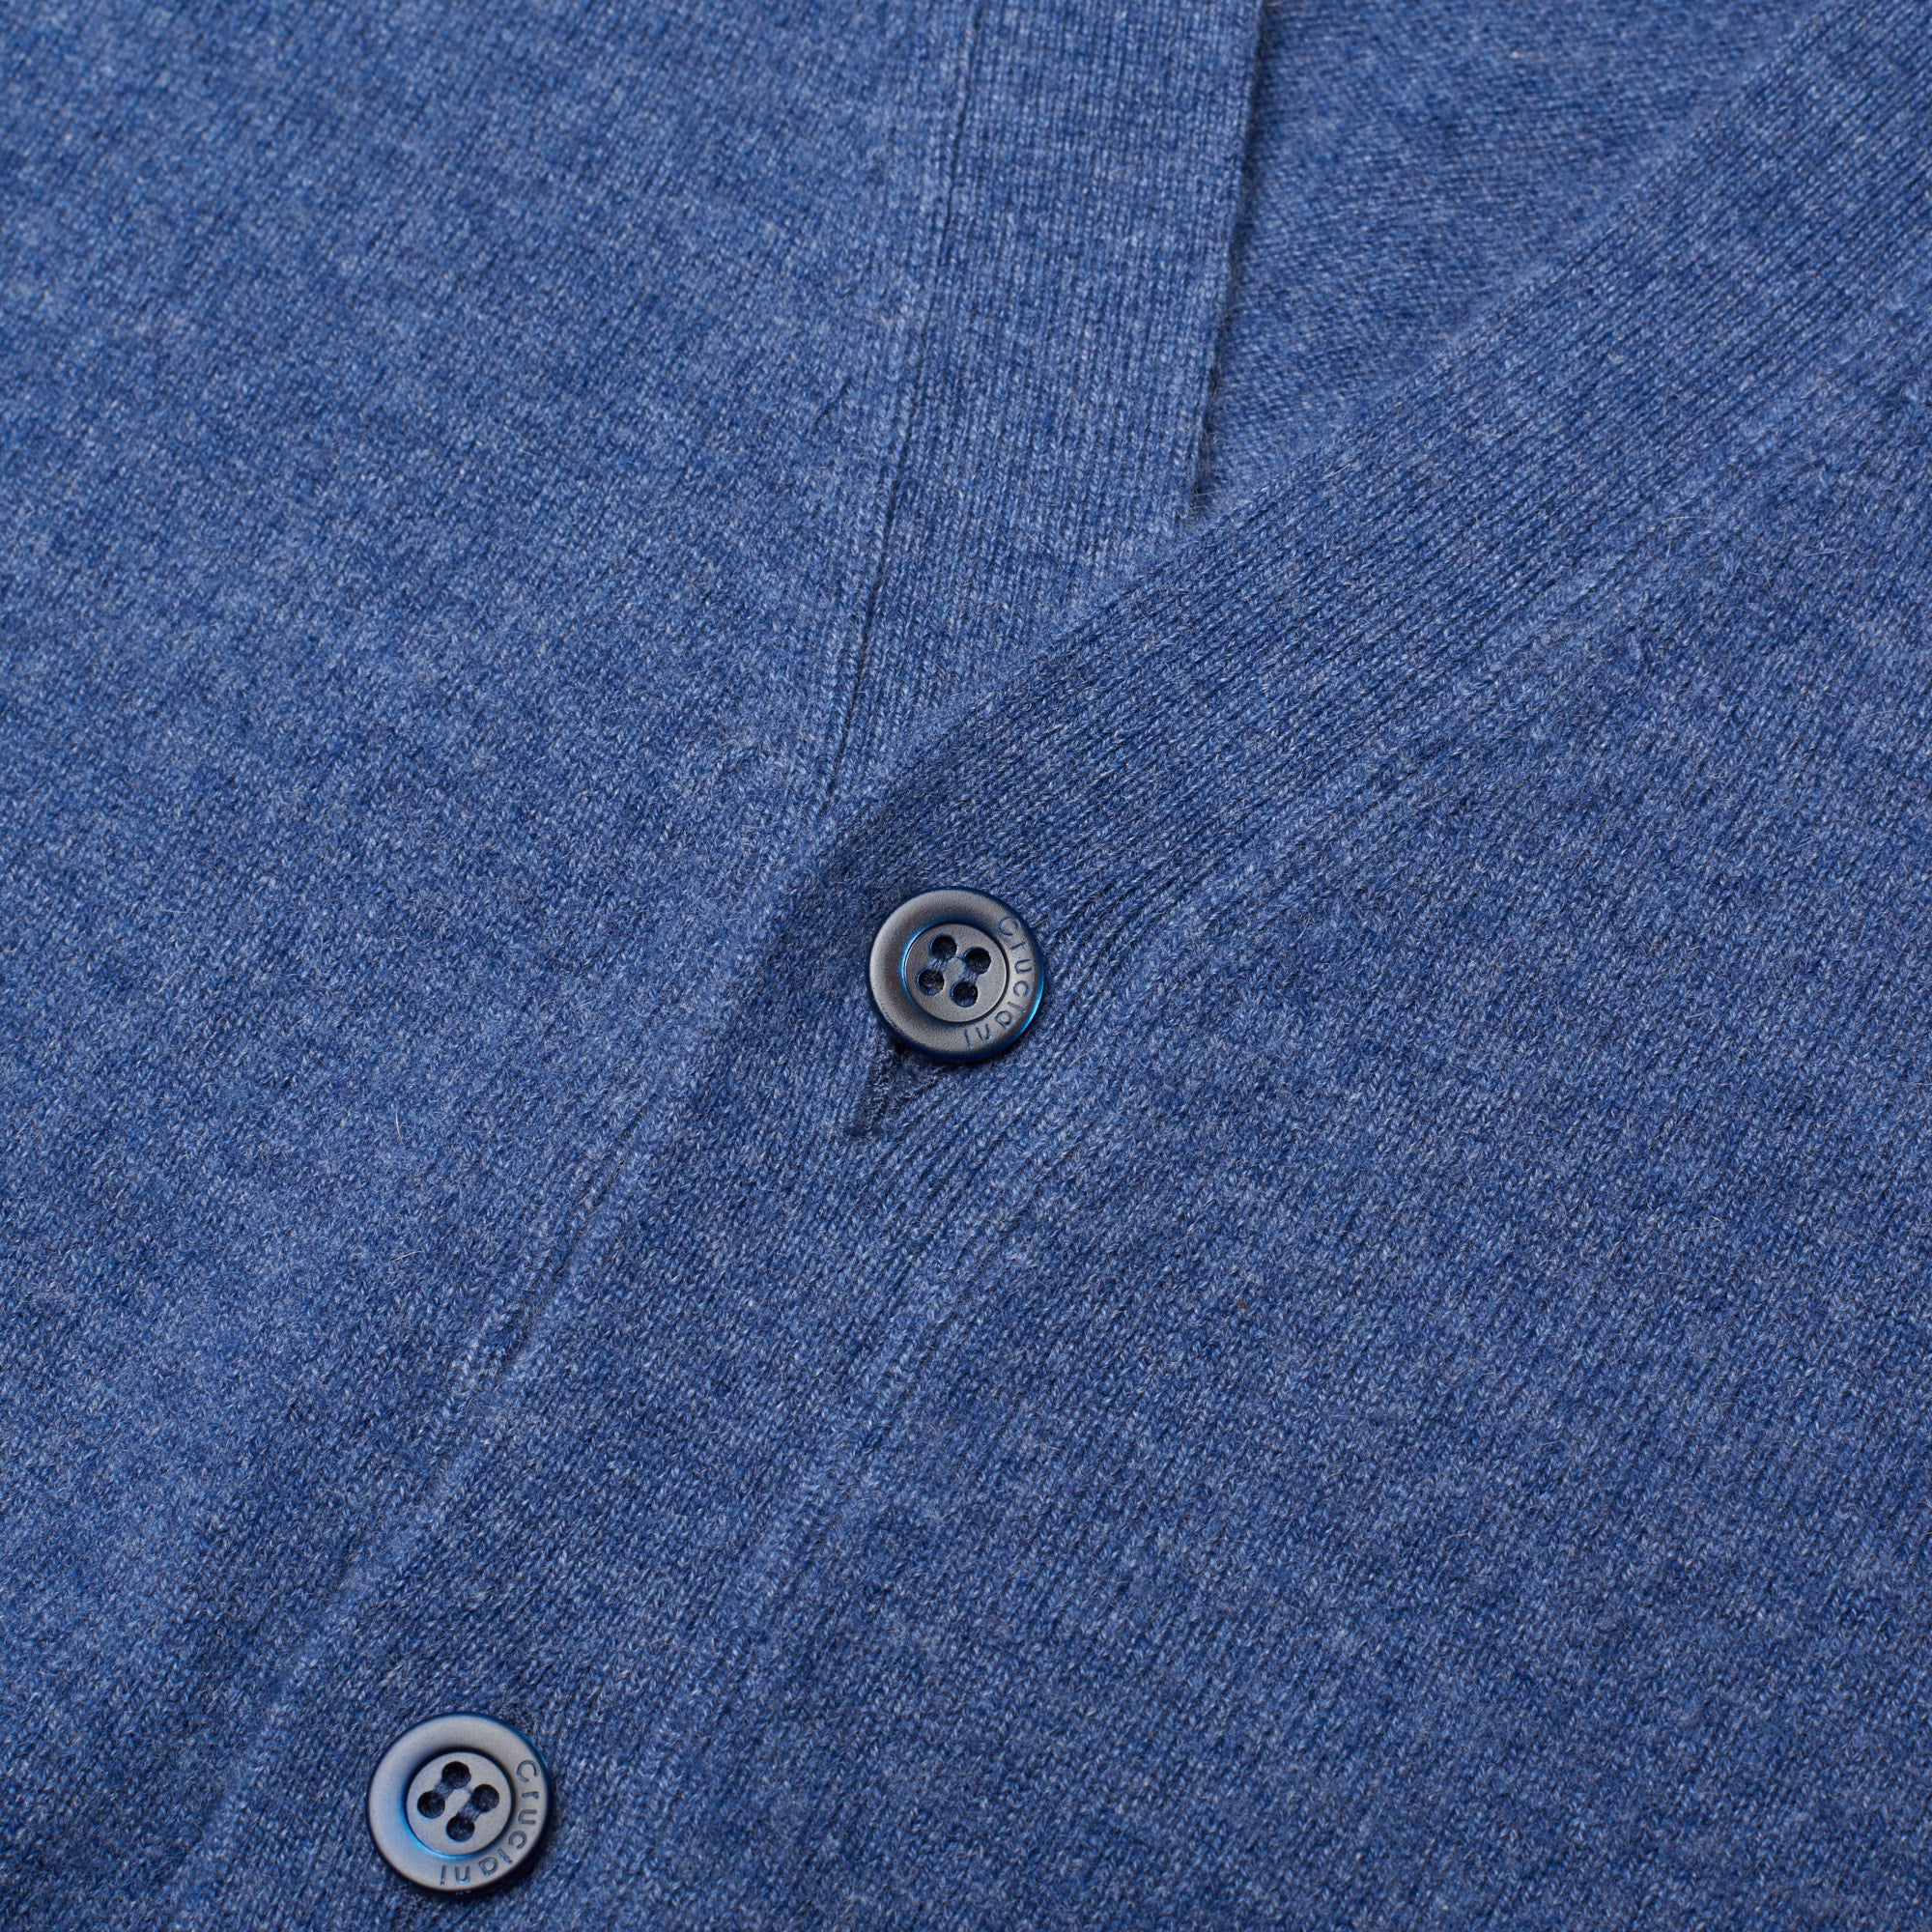 CRUCIANI Blue Cashmere Knit Sleeveless Cardigan Sweater Vest EU 50 NEW US M CRUCIANI